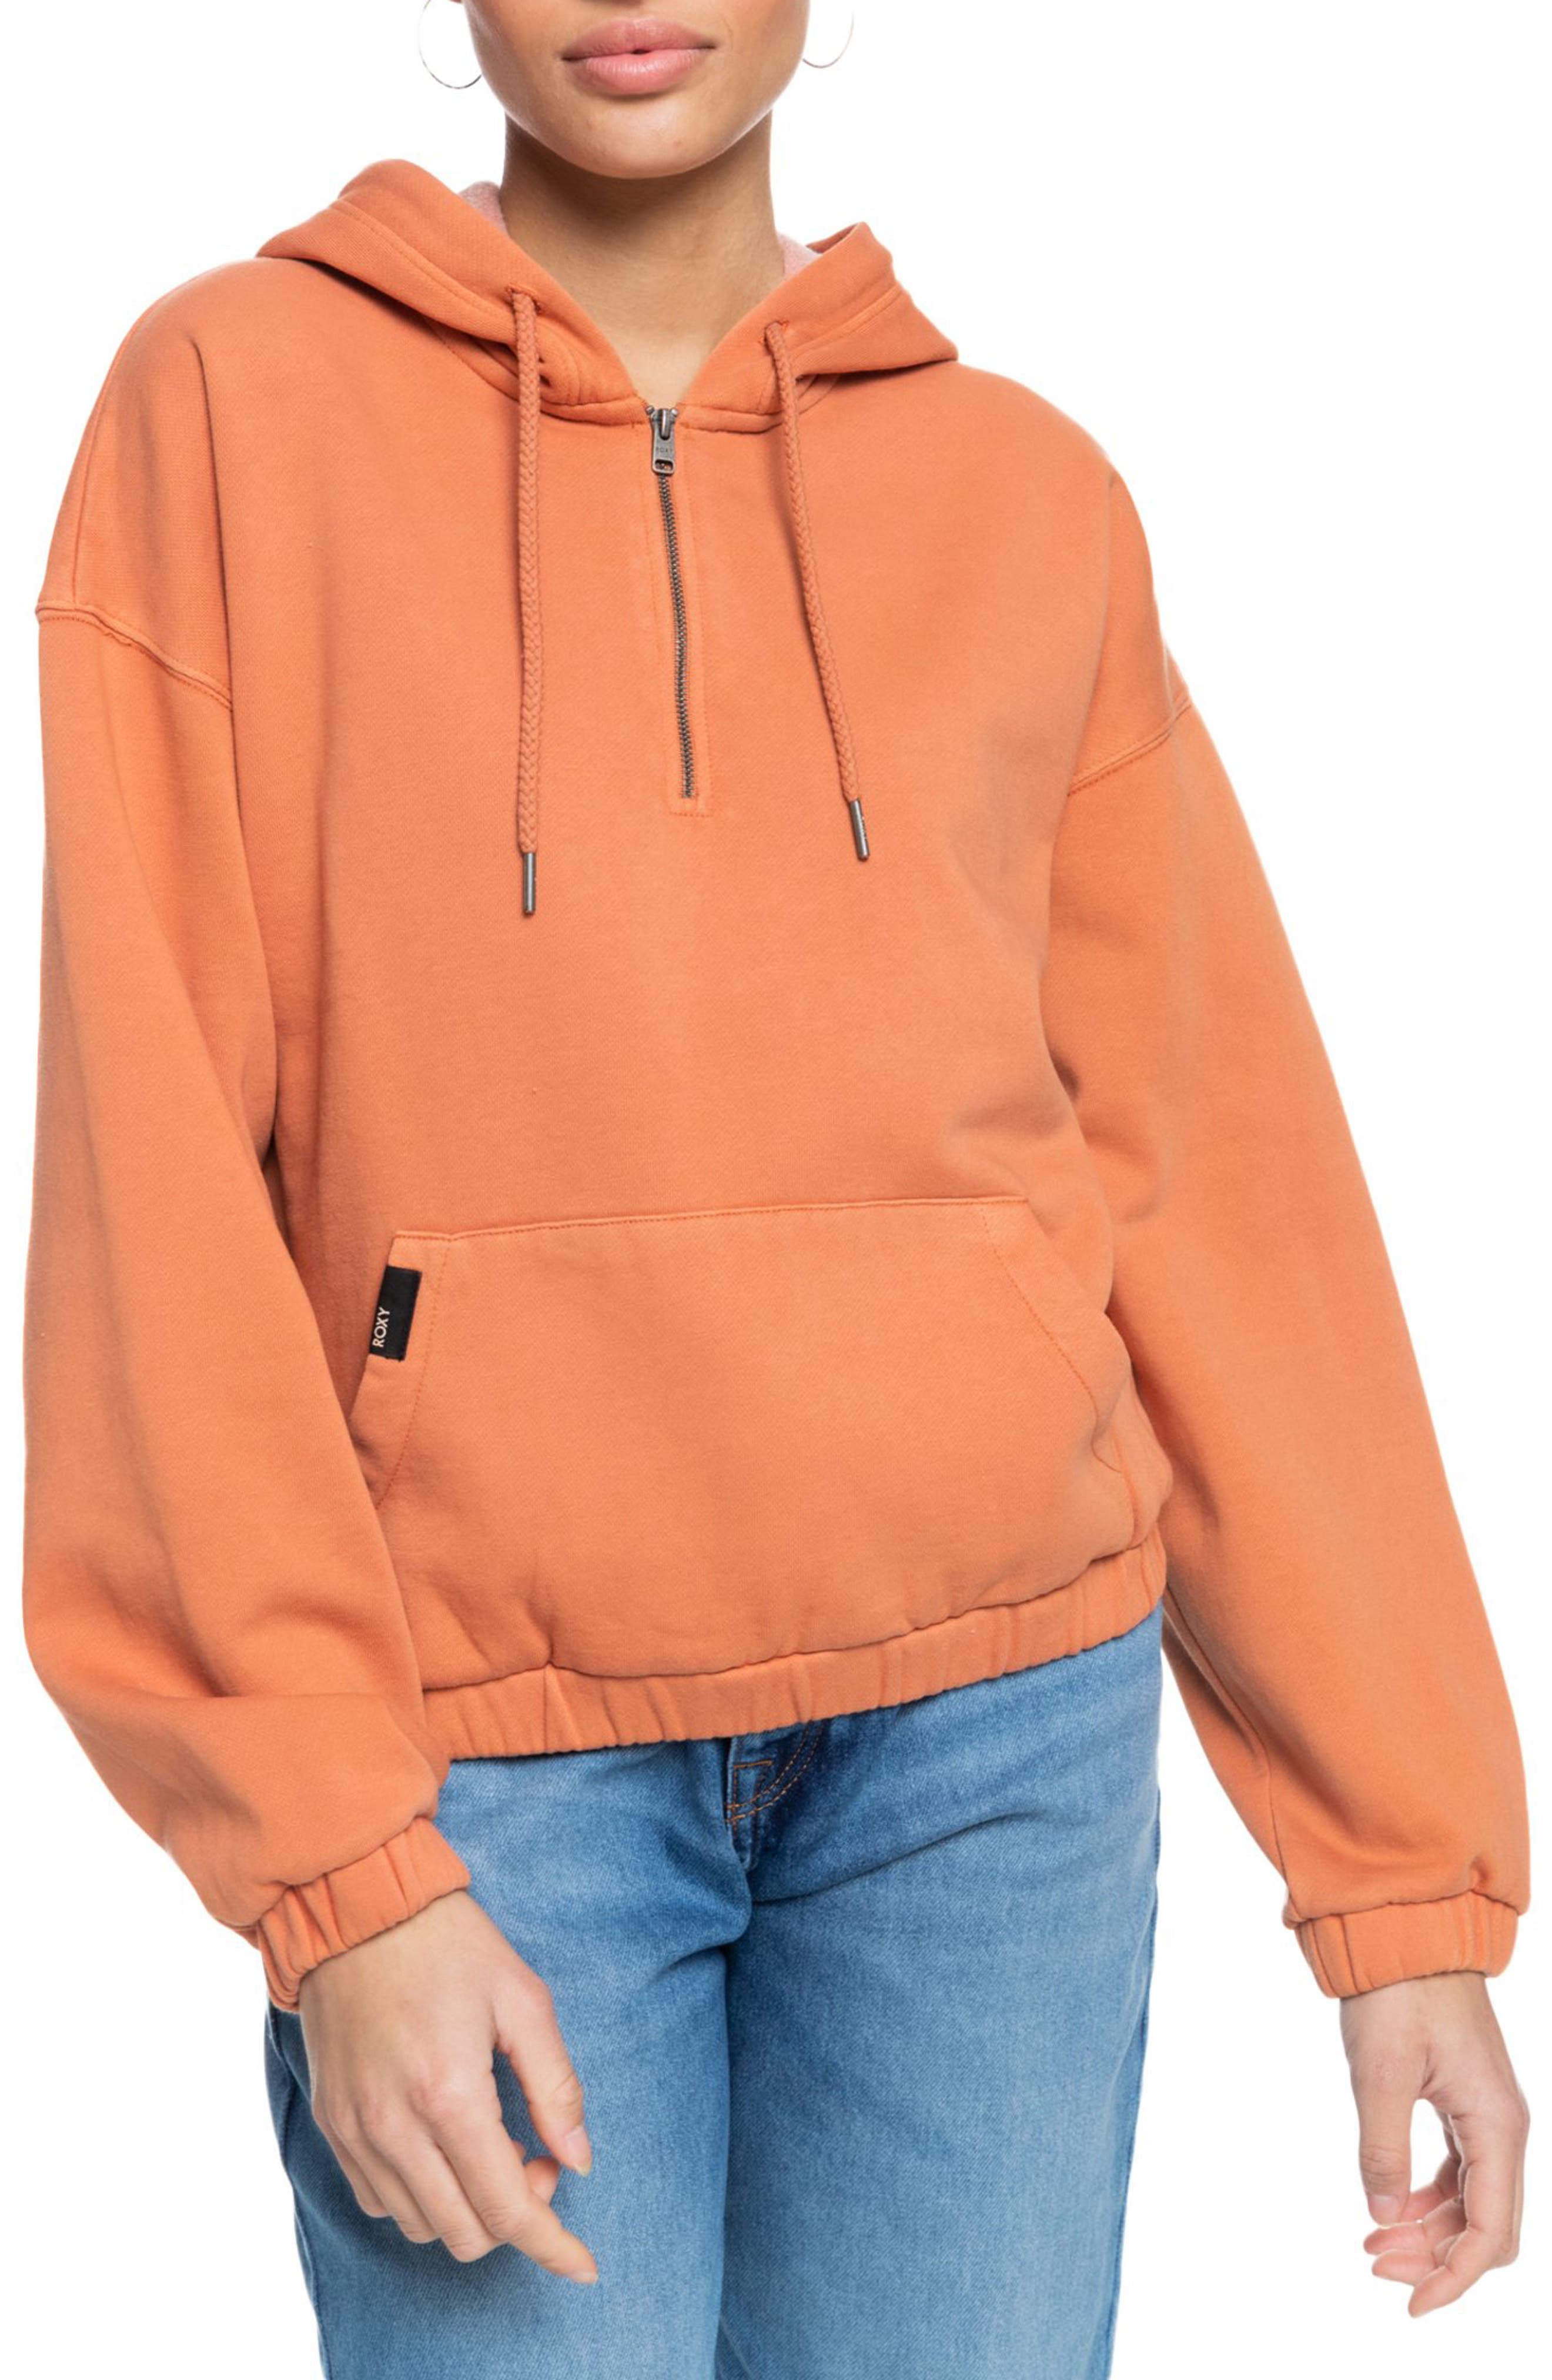 ROXY Zip Up Fleece Hoodie Sweater Streetwear Clothing Size M